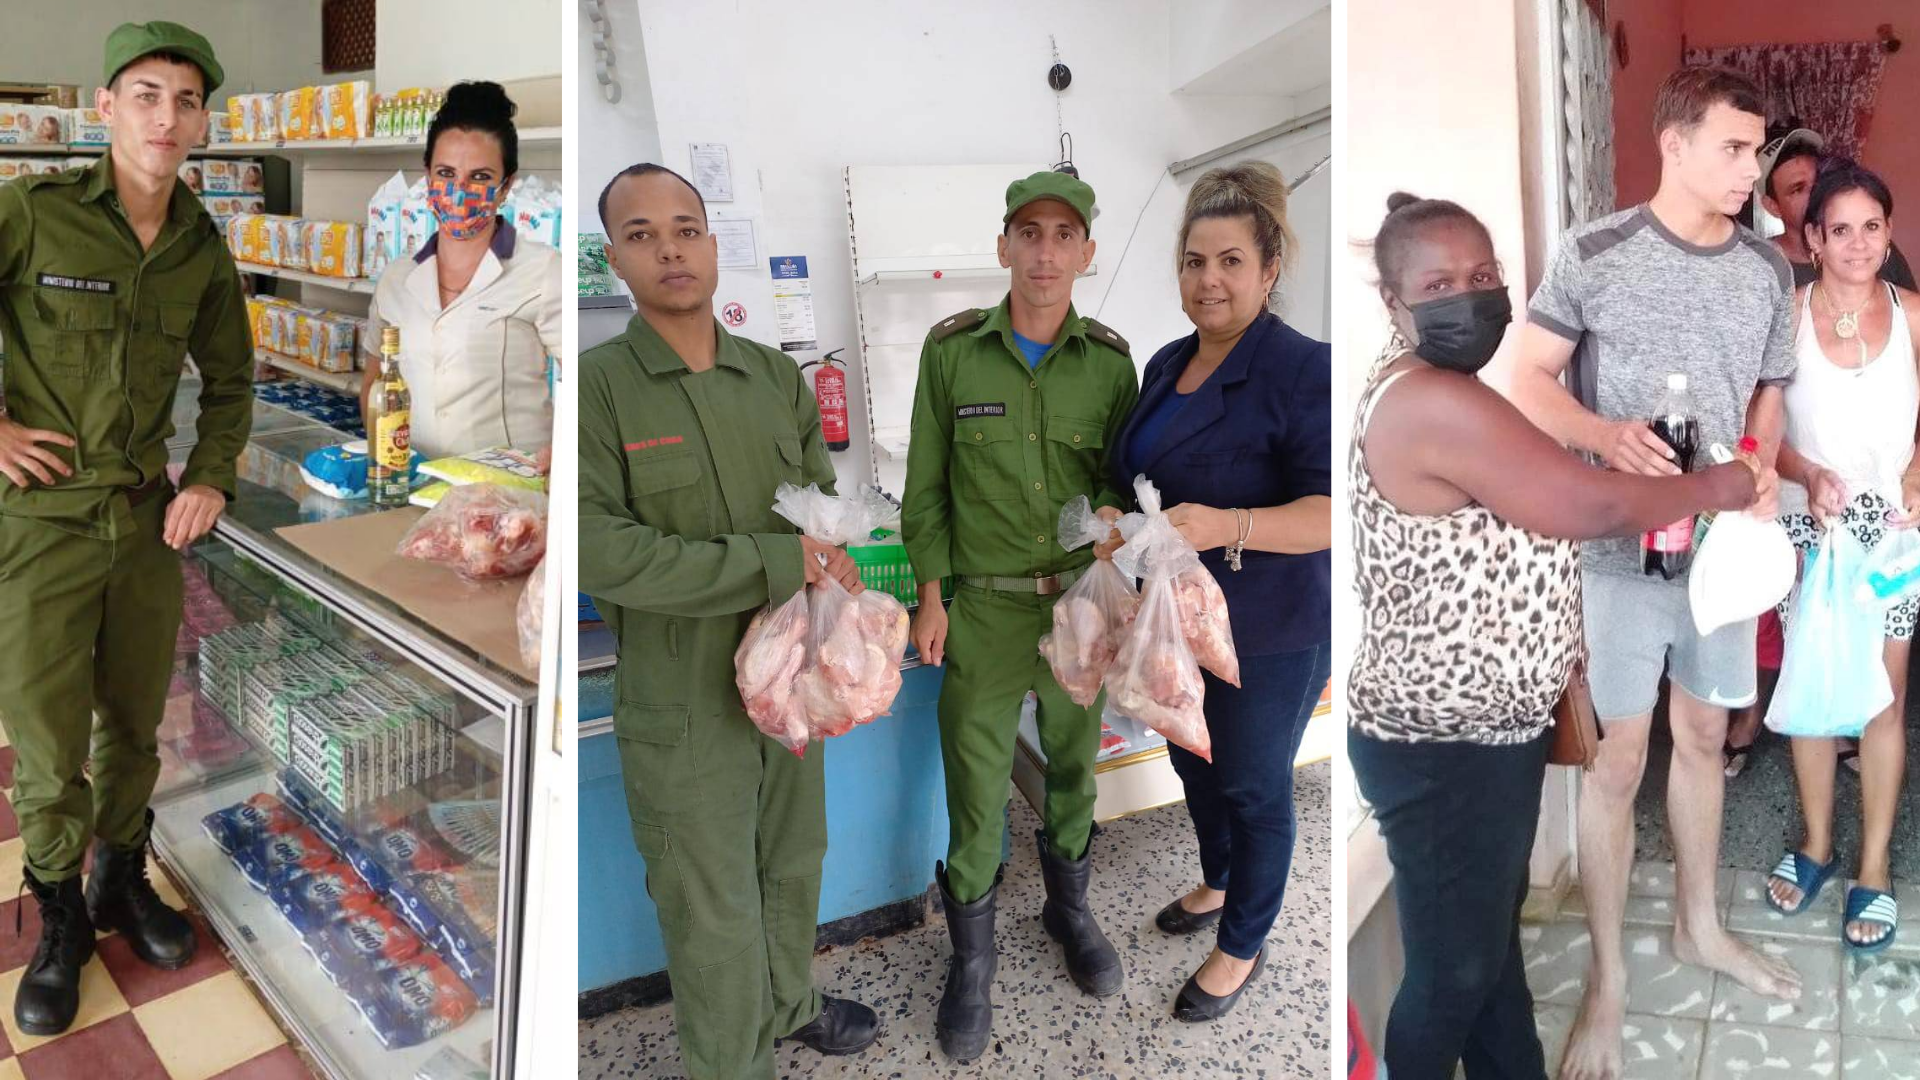 Dos paquetes de pollo y una bolsa de aseo: el pago del régimen a quienes arriesgan la vida